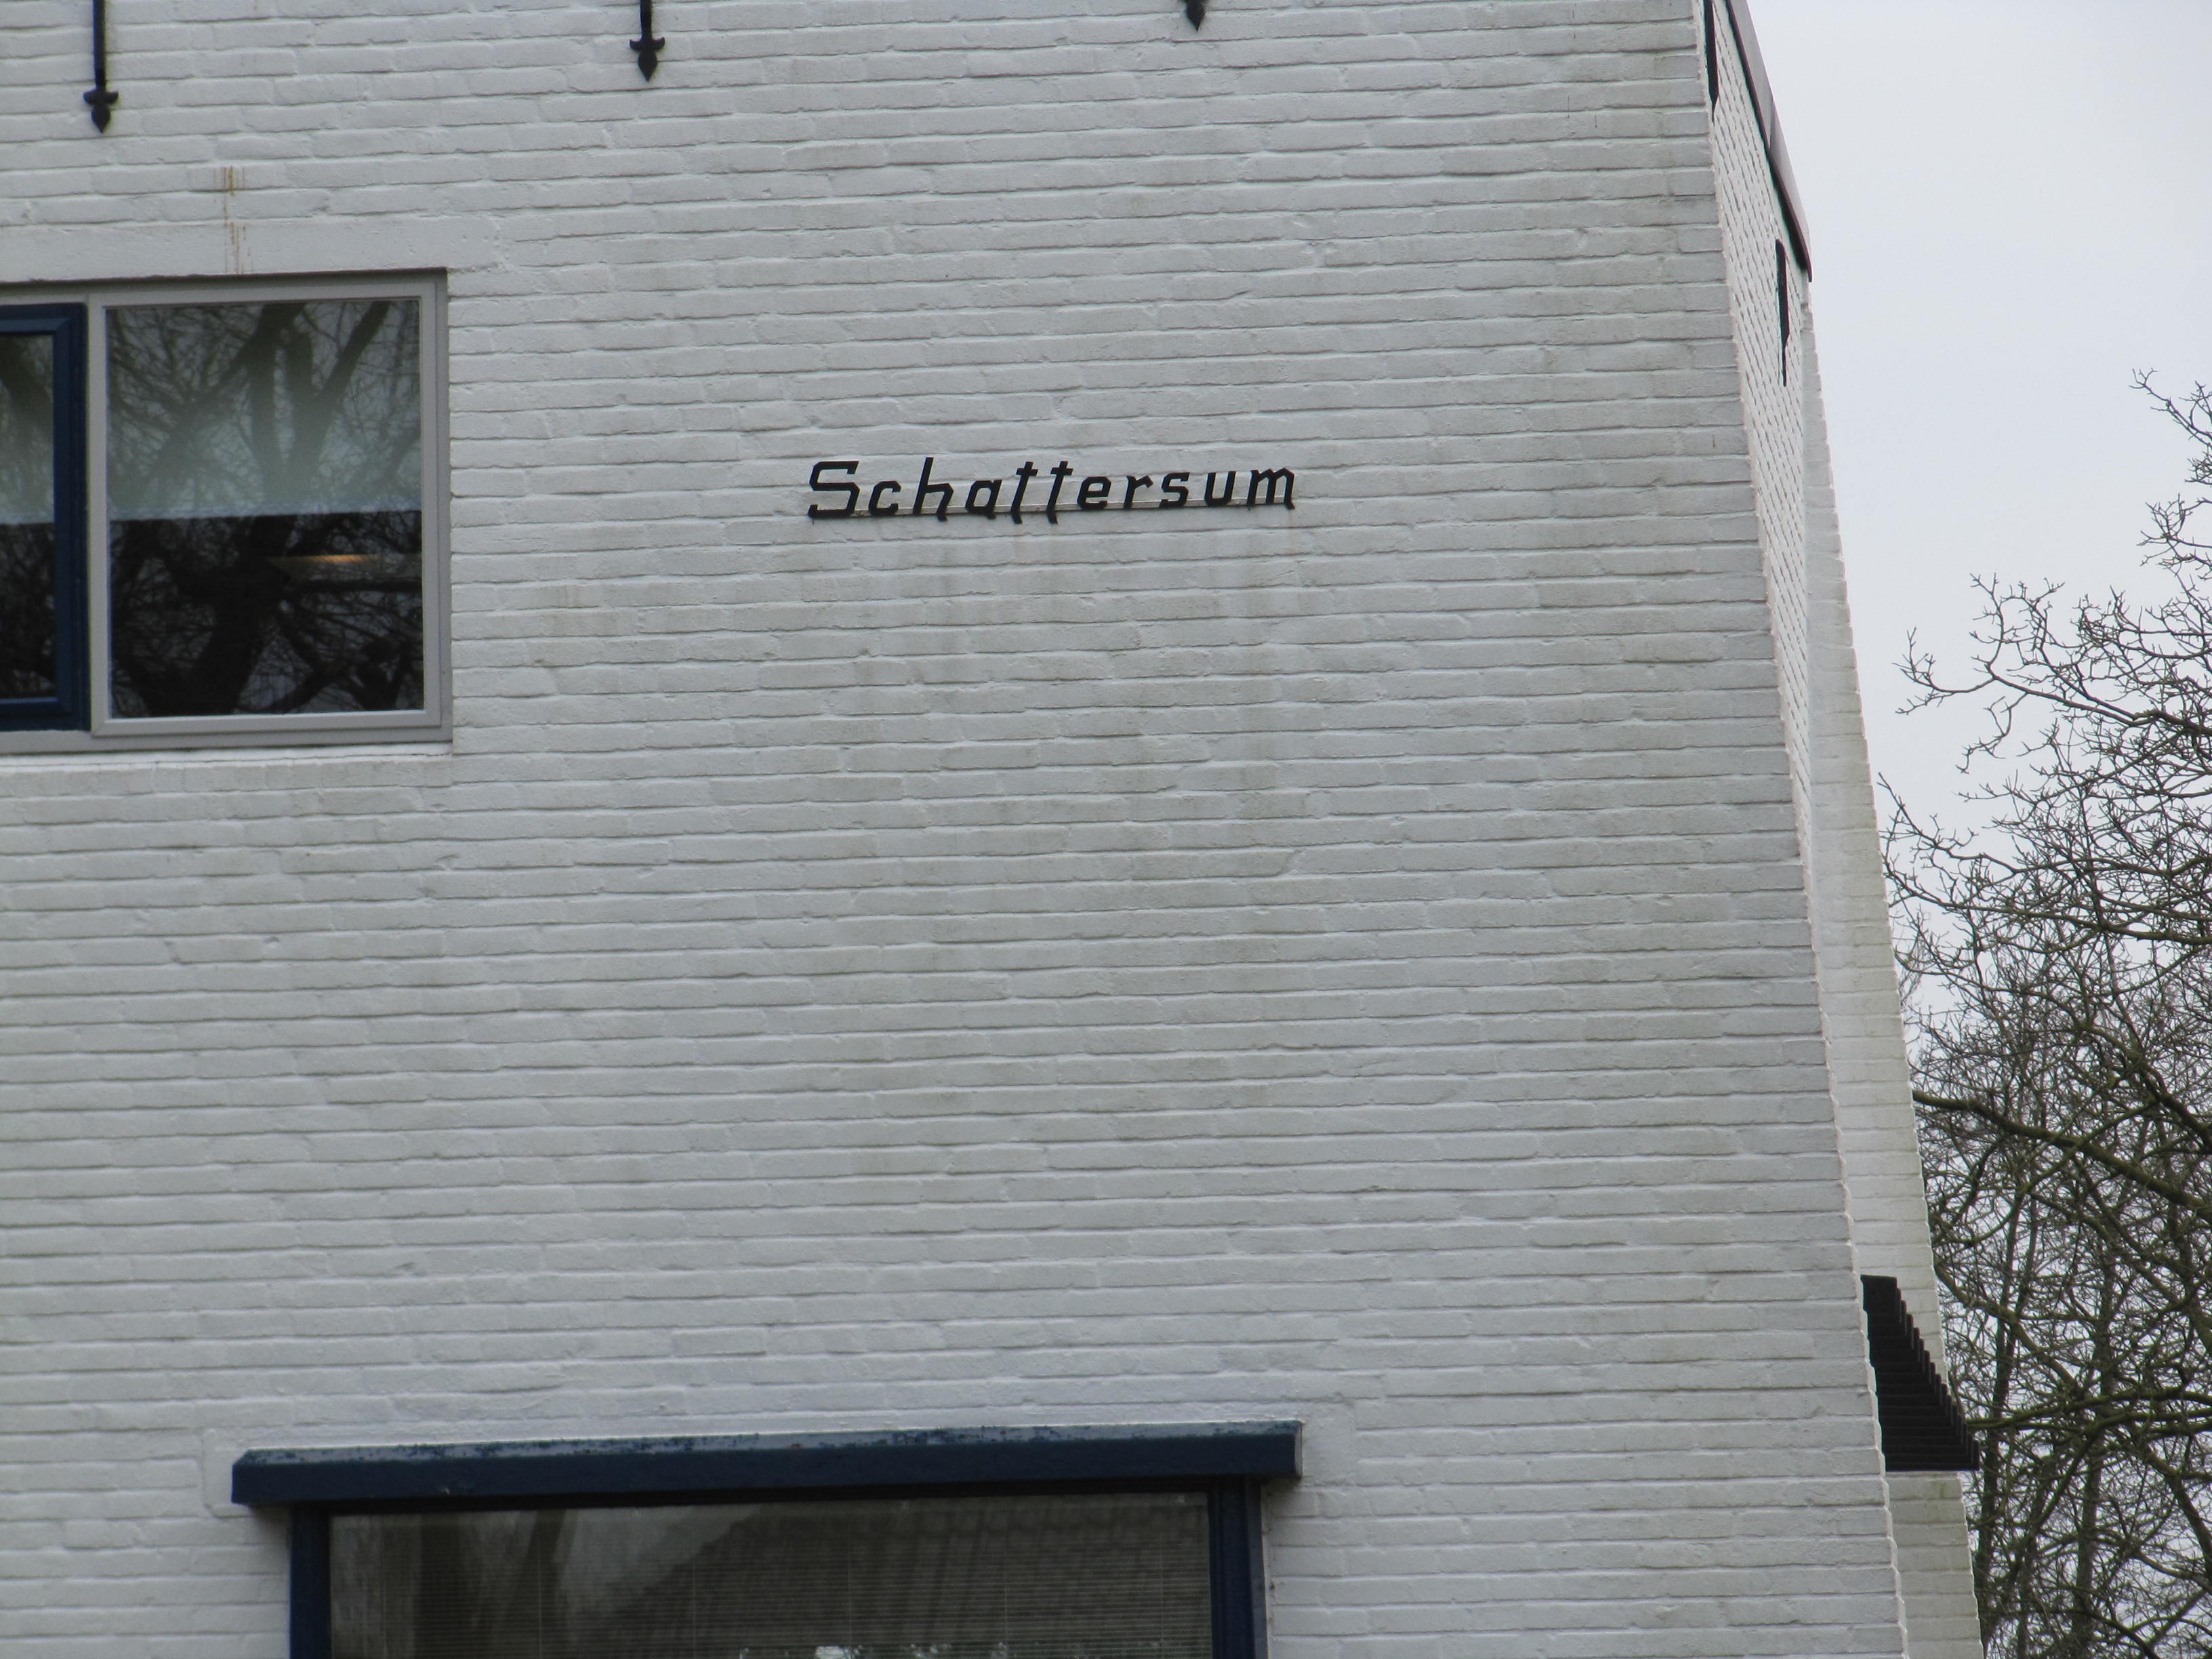 Het woord Schattersum in metalen letters op de gevel van het nieuwe pand.